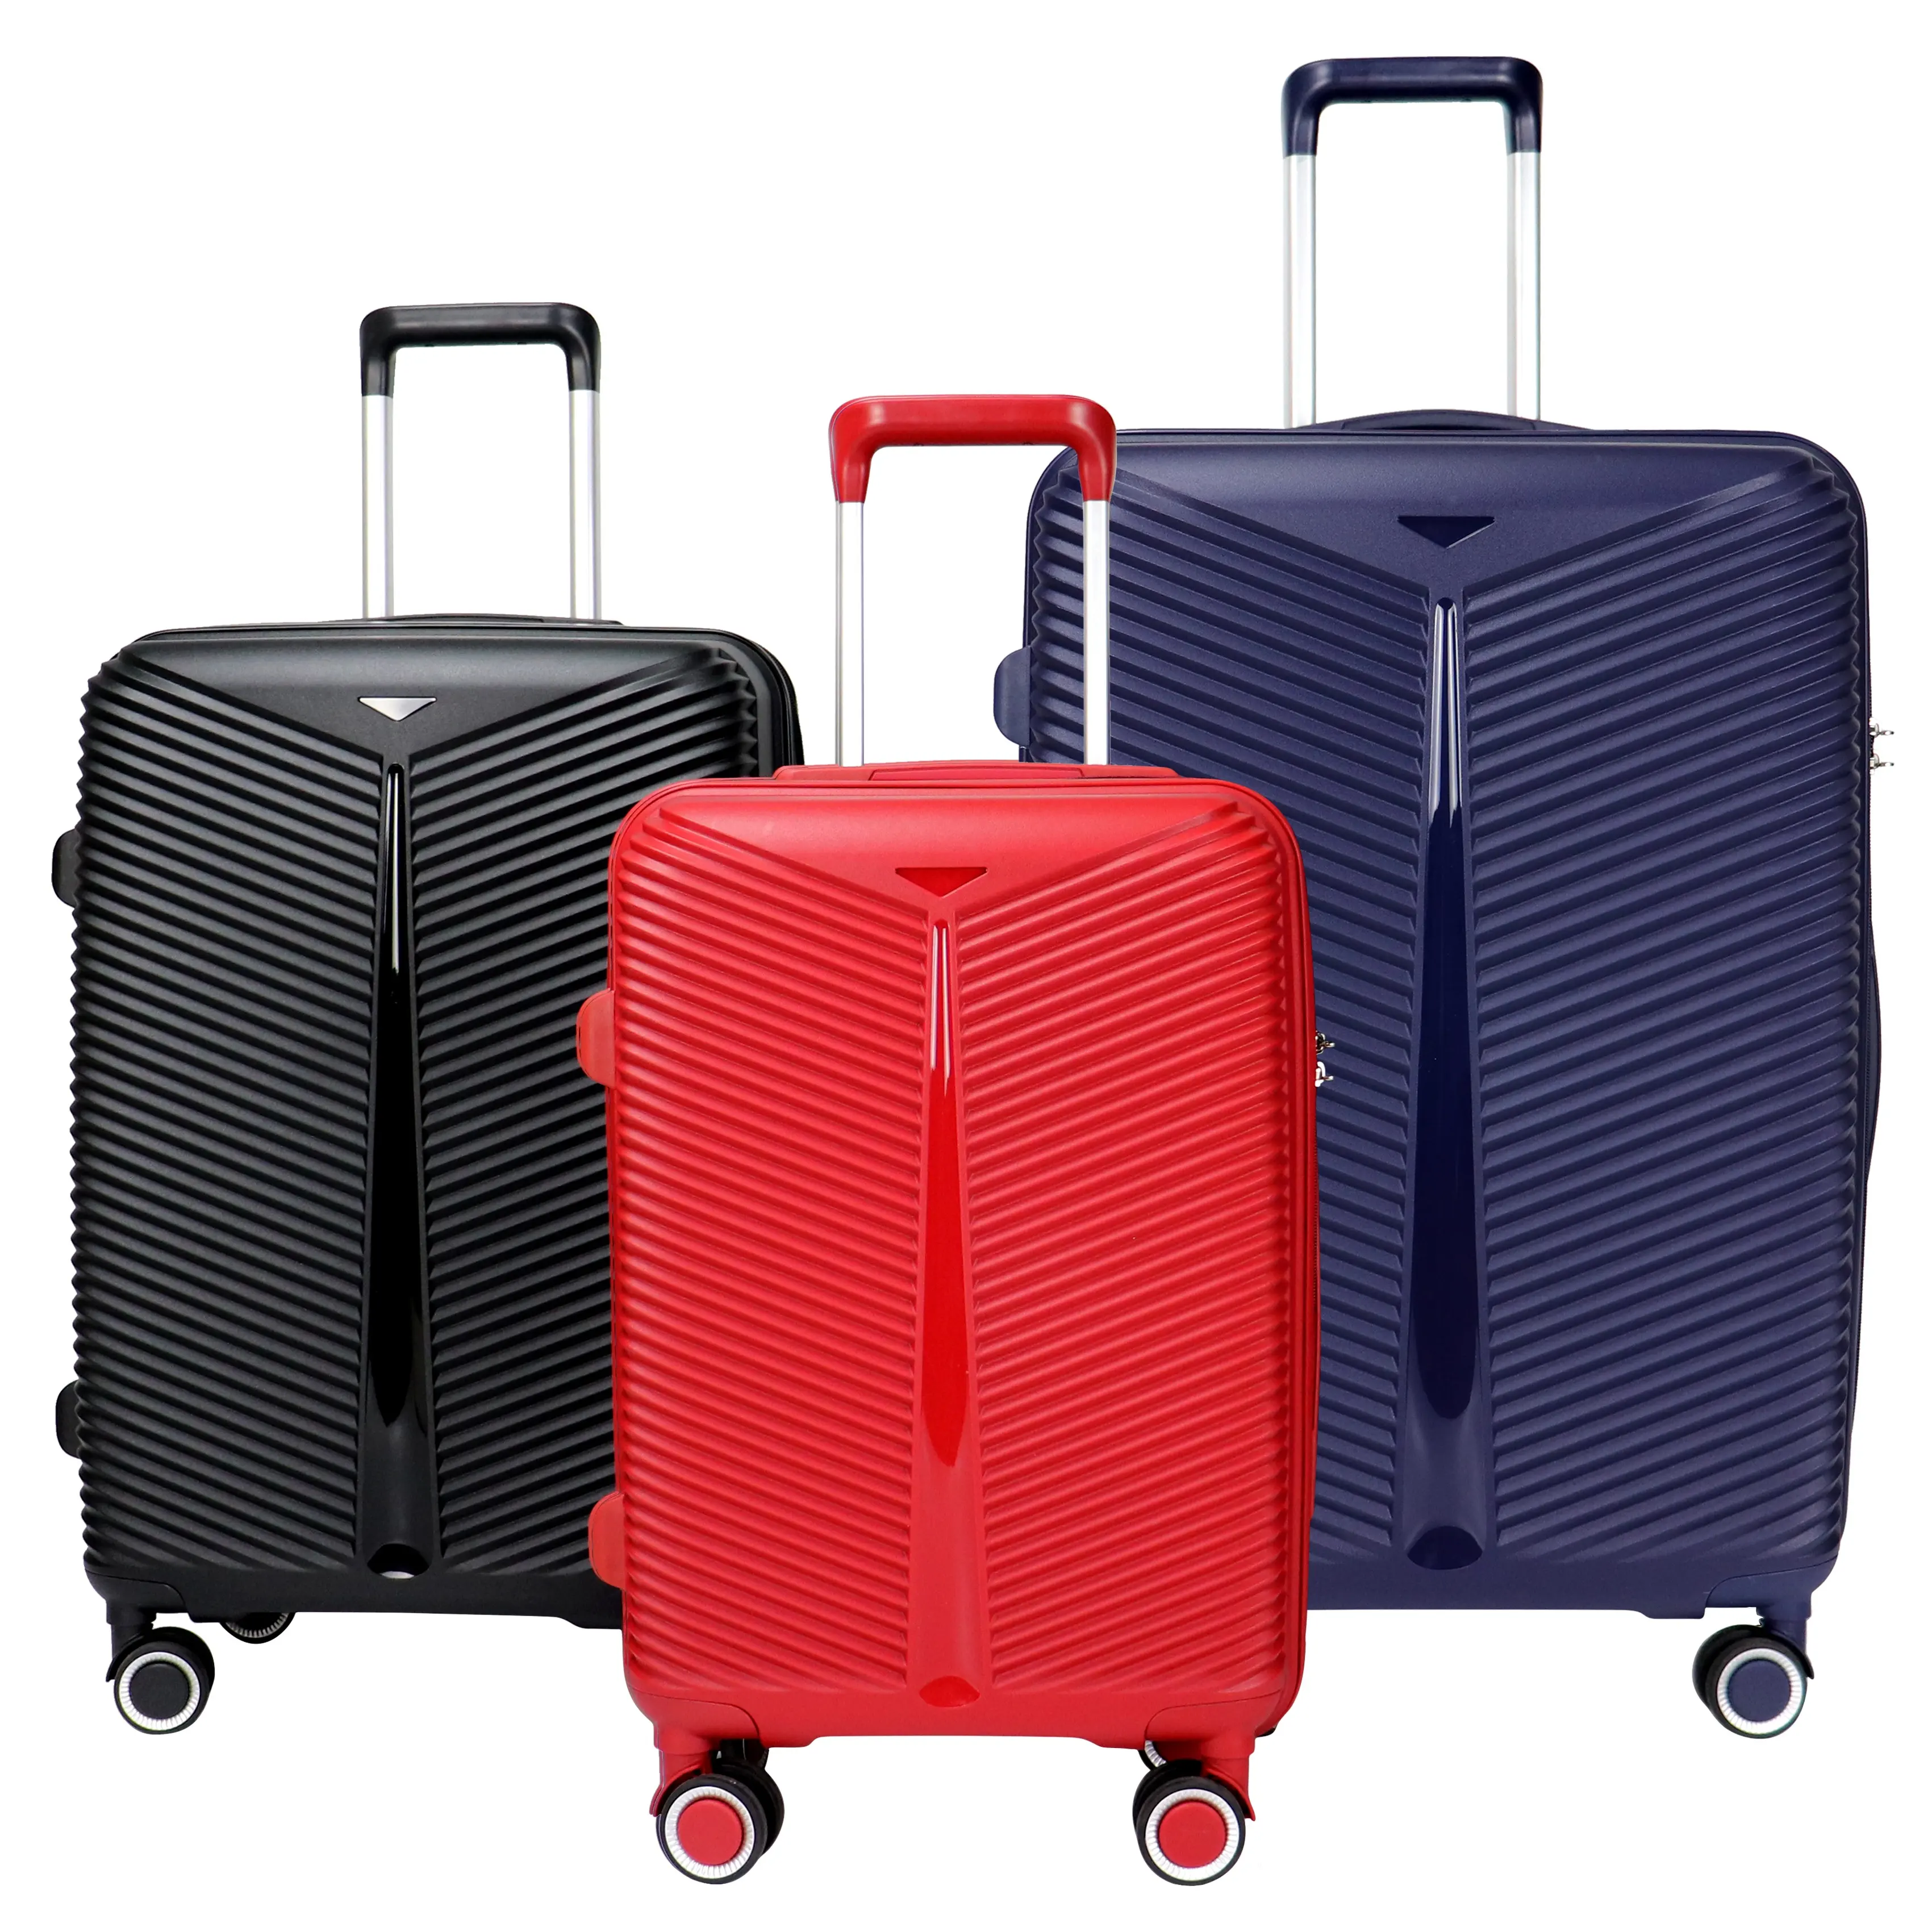 PP 공장 가격 새로운 모델 수하물 여행 가방 여행 가방 포장 플라스틱 휴대 여행 가방